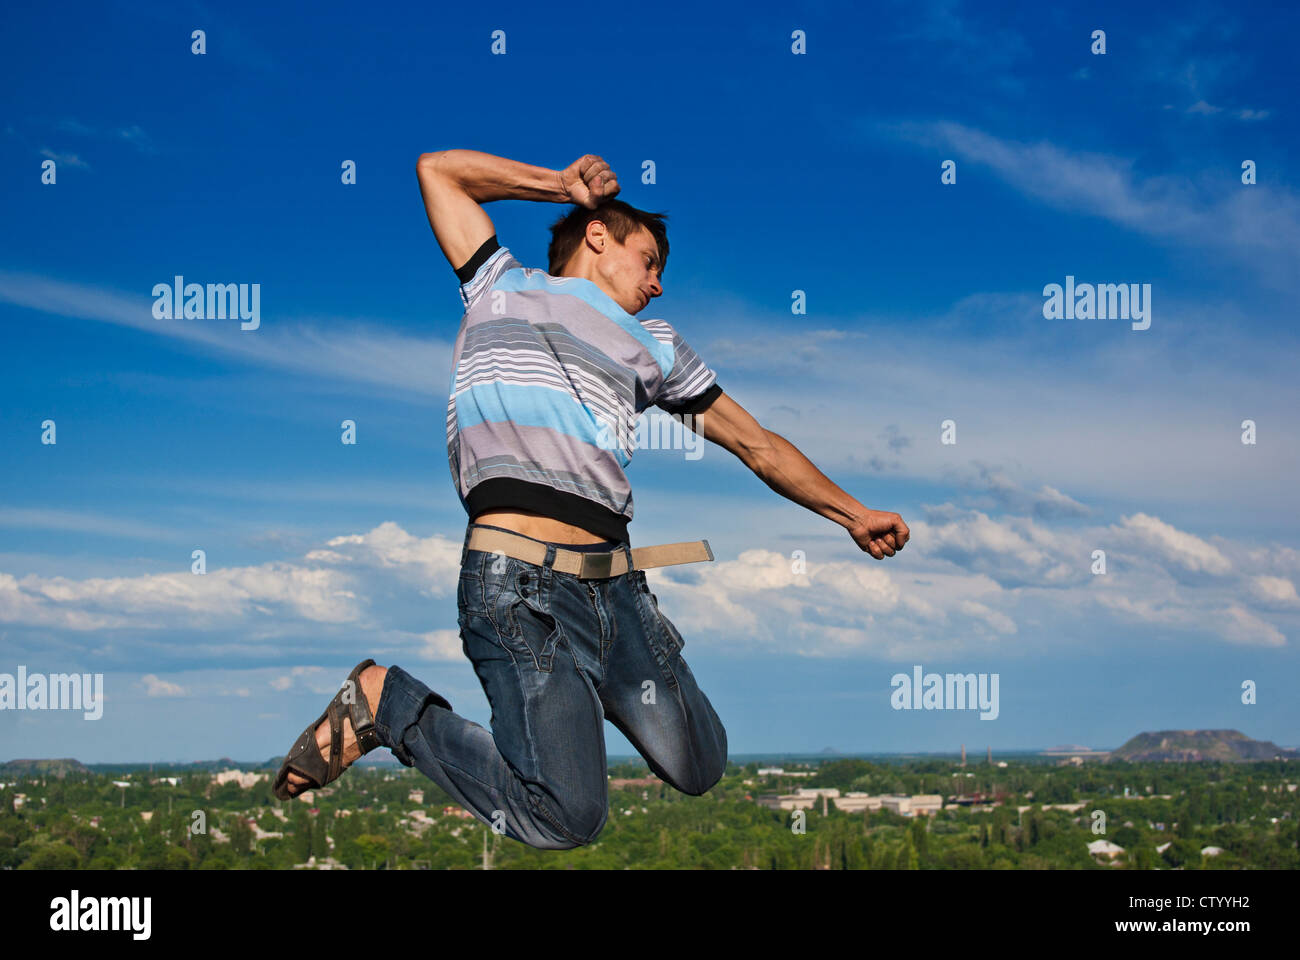 Junge springt vor dem Hintergrund einer Stadt und Himmel Stockfoto